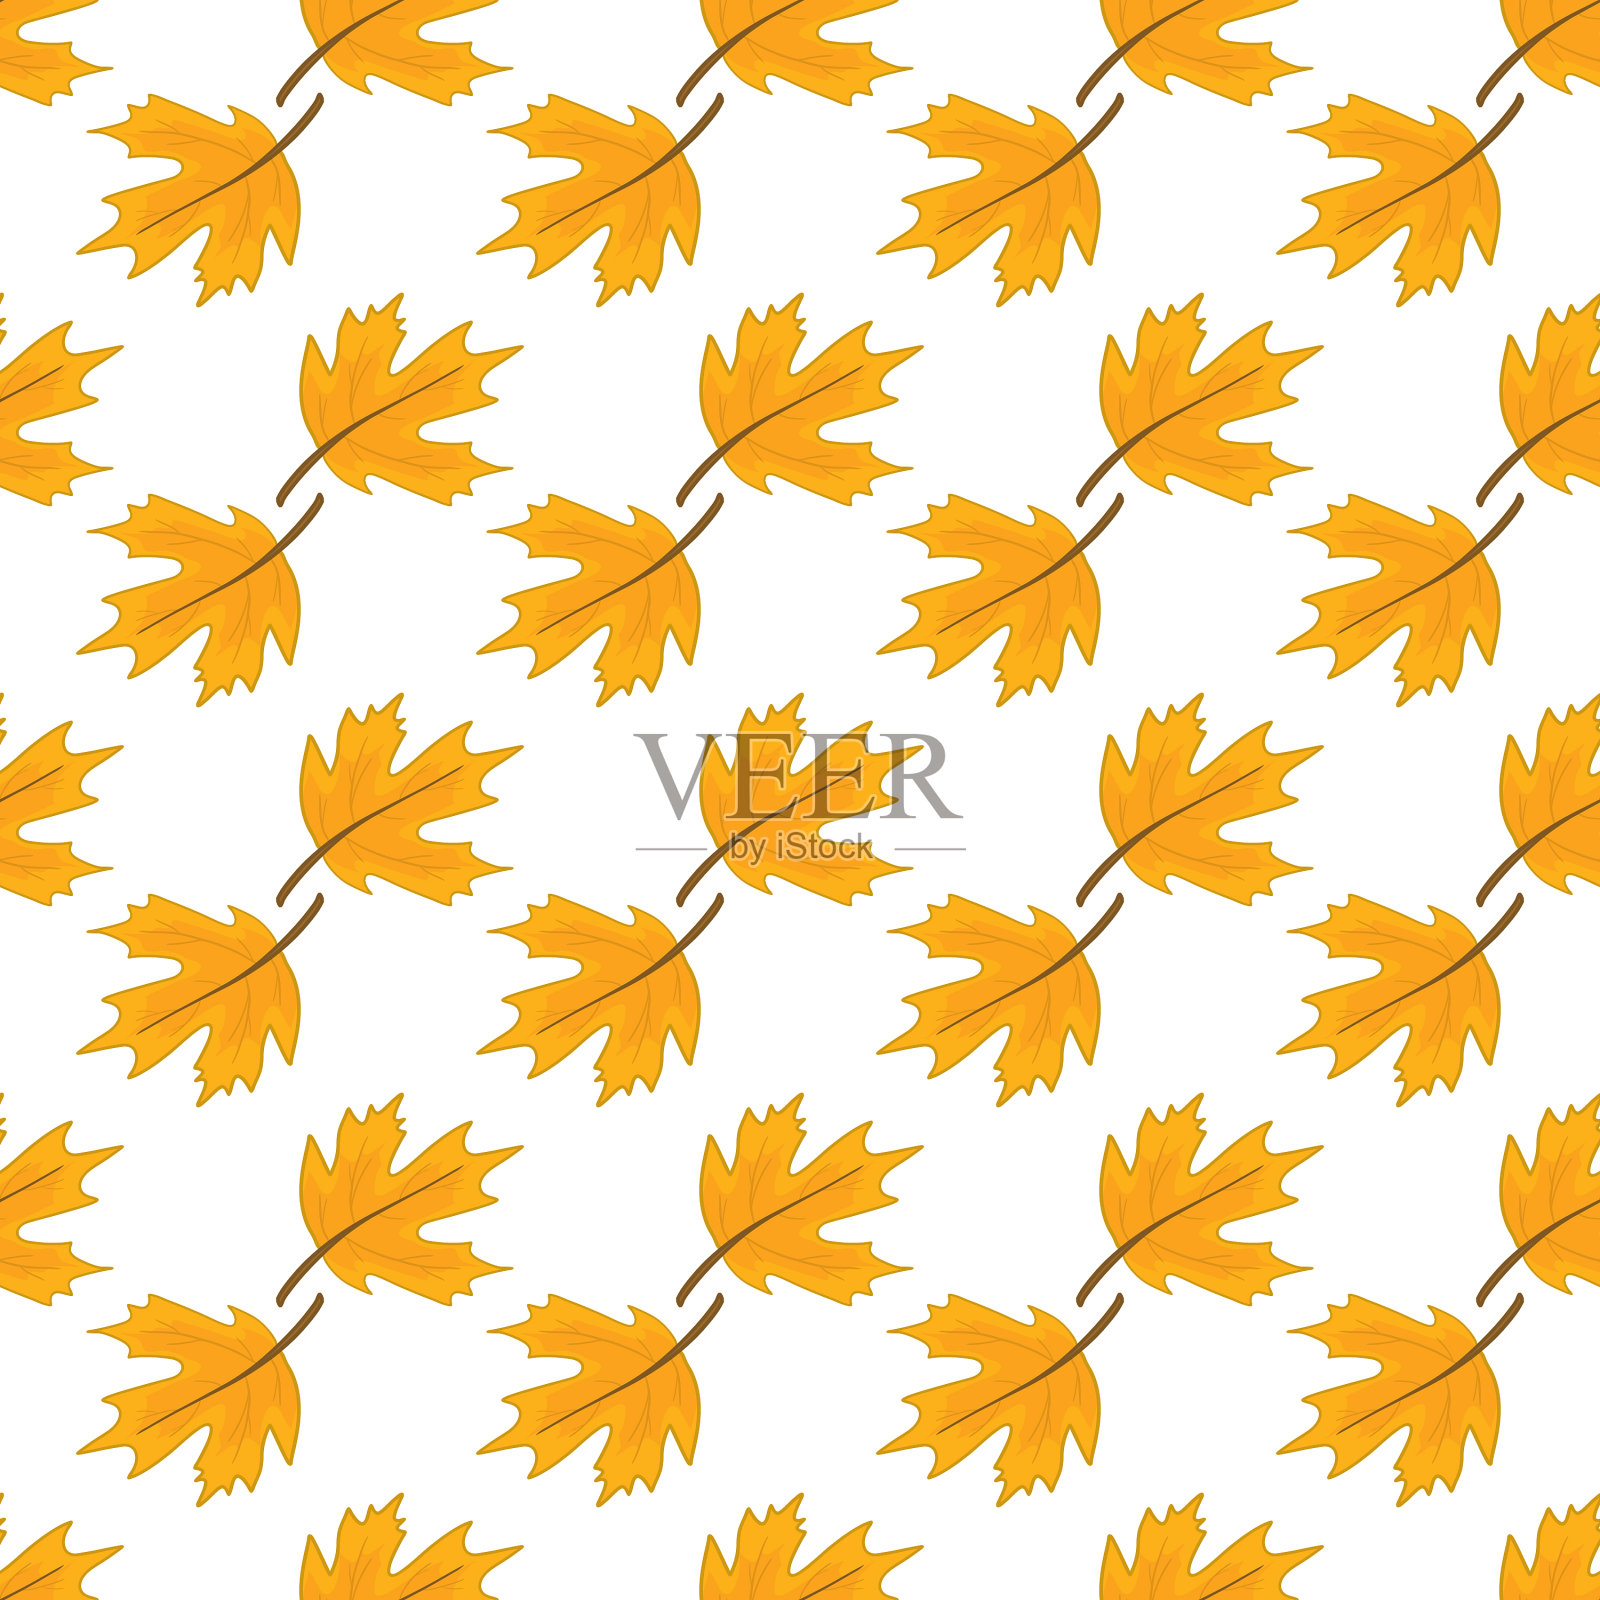 秋天的图案与落叶和橡子插画图片素材